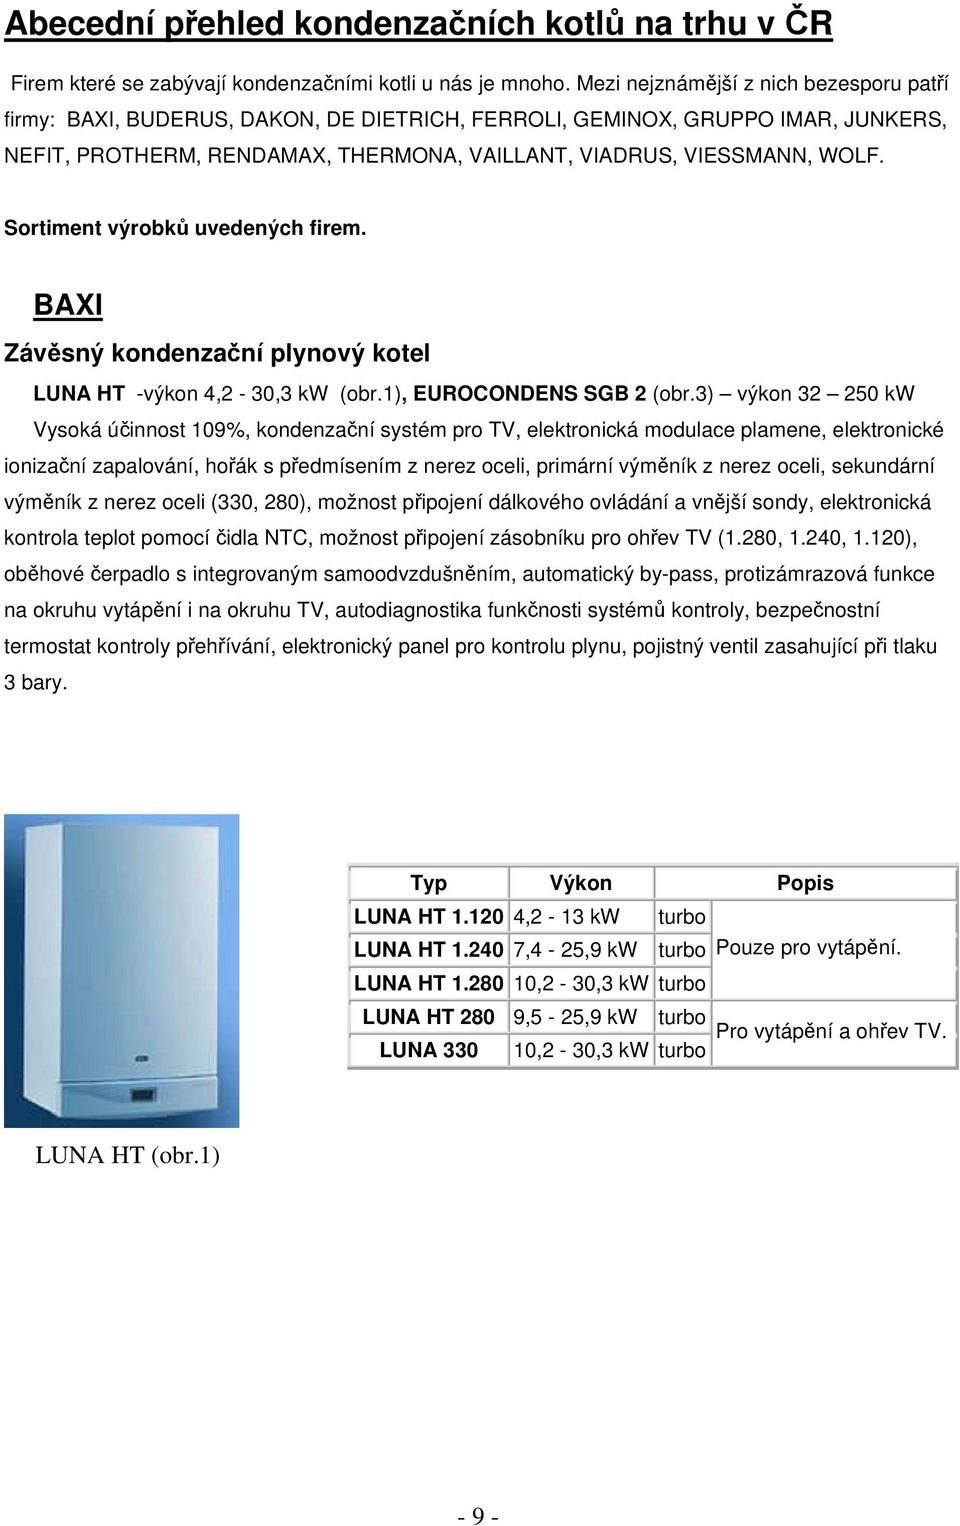 Sortiment výrobků uvedených firem. BAXI Závěsný kondenzační plynový kotel LUNA HT -výkon 4,2-30,3 kw (obr.1), EUROCONDENS SGB 2 (obr.